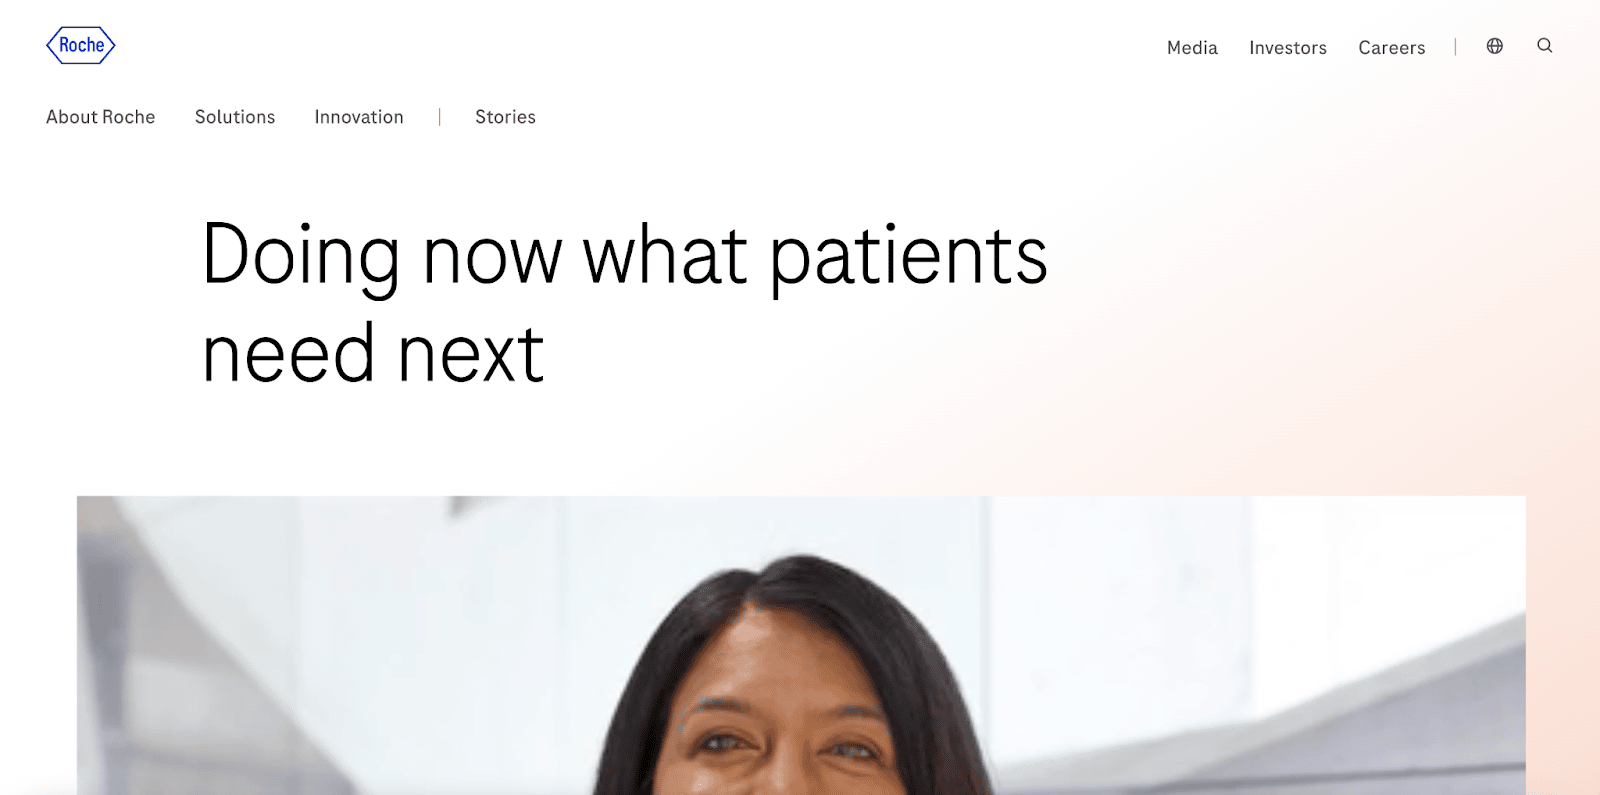 Una captura de pantalla que muestra la página oficial de Roche con el texto "Doing now what patients need next" (Haciendo ahora lo que los pacientes necesitan a continuación) y la foto de una mujer sonriente.